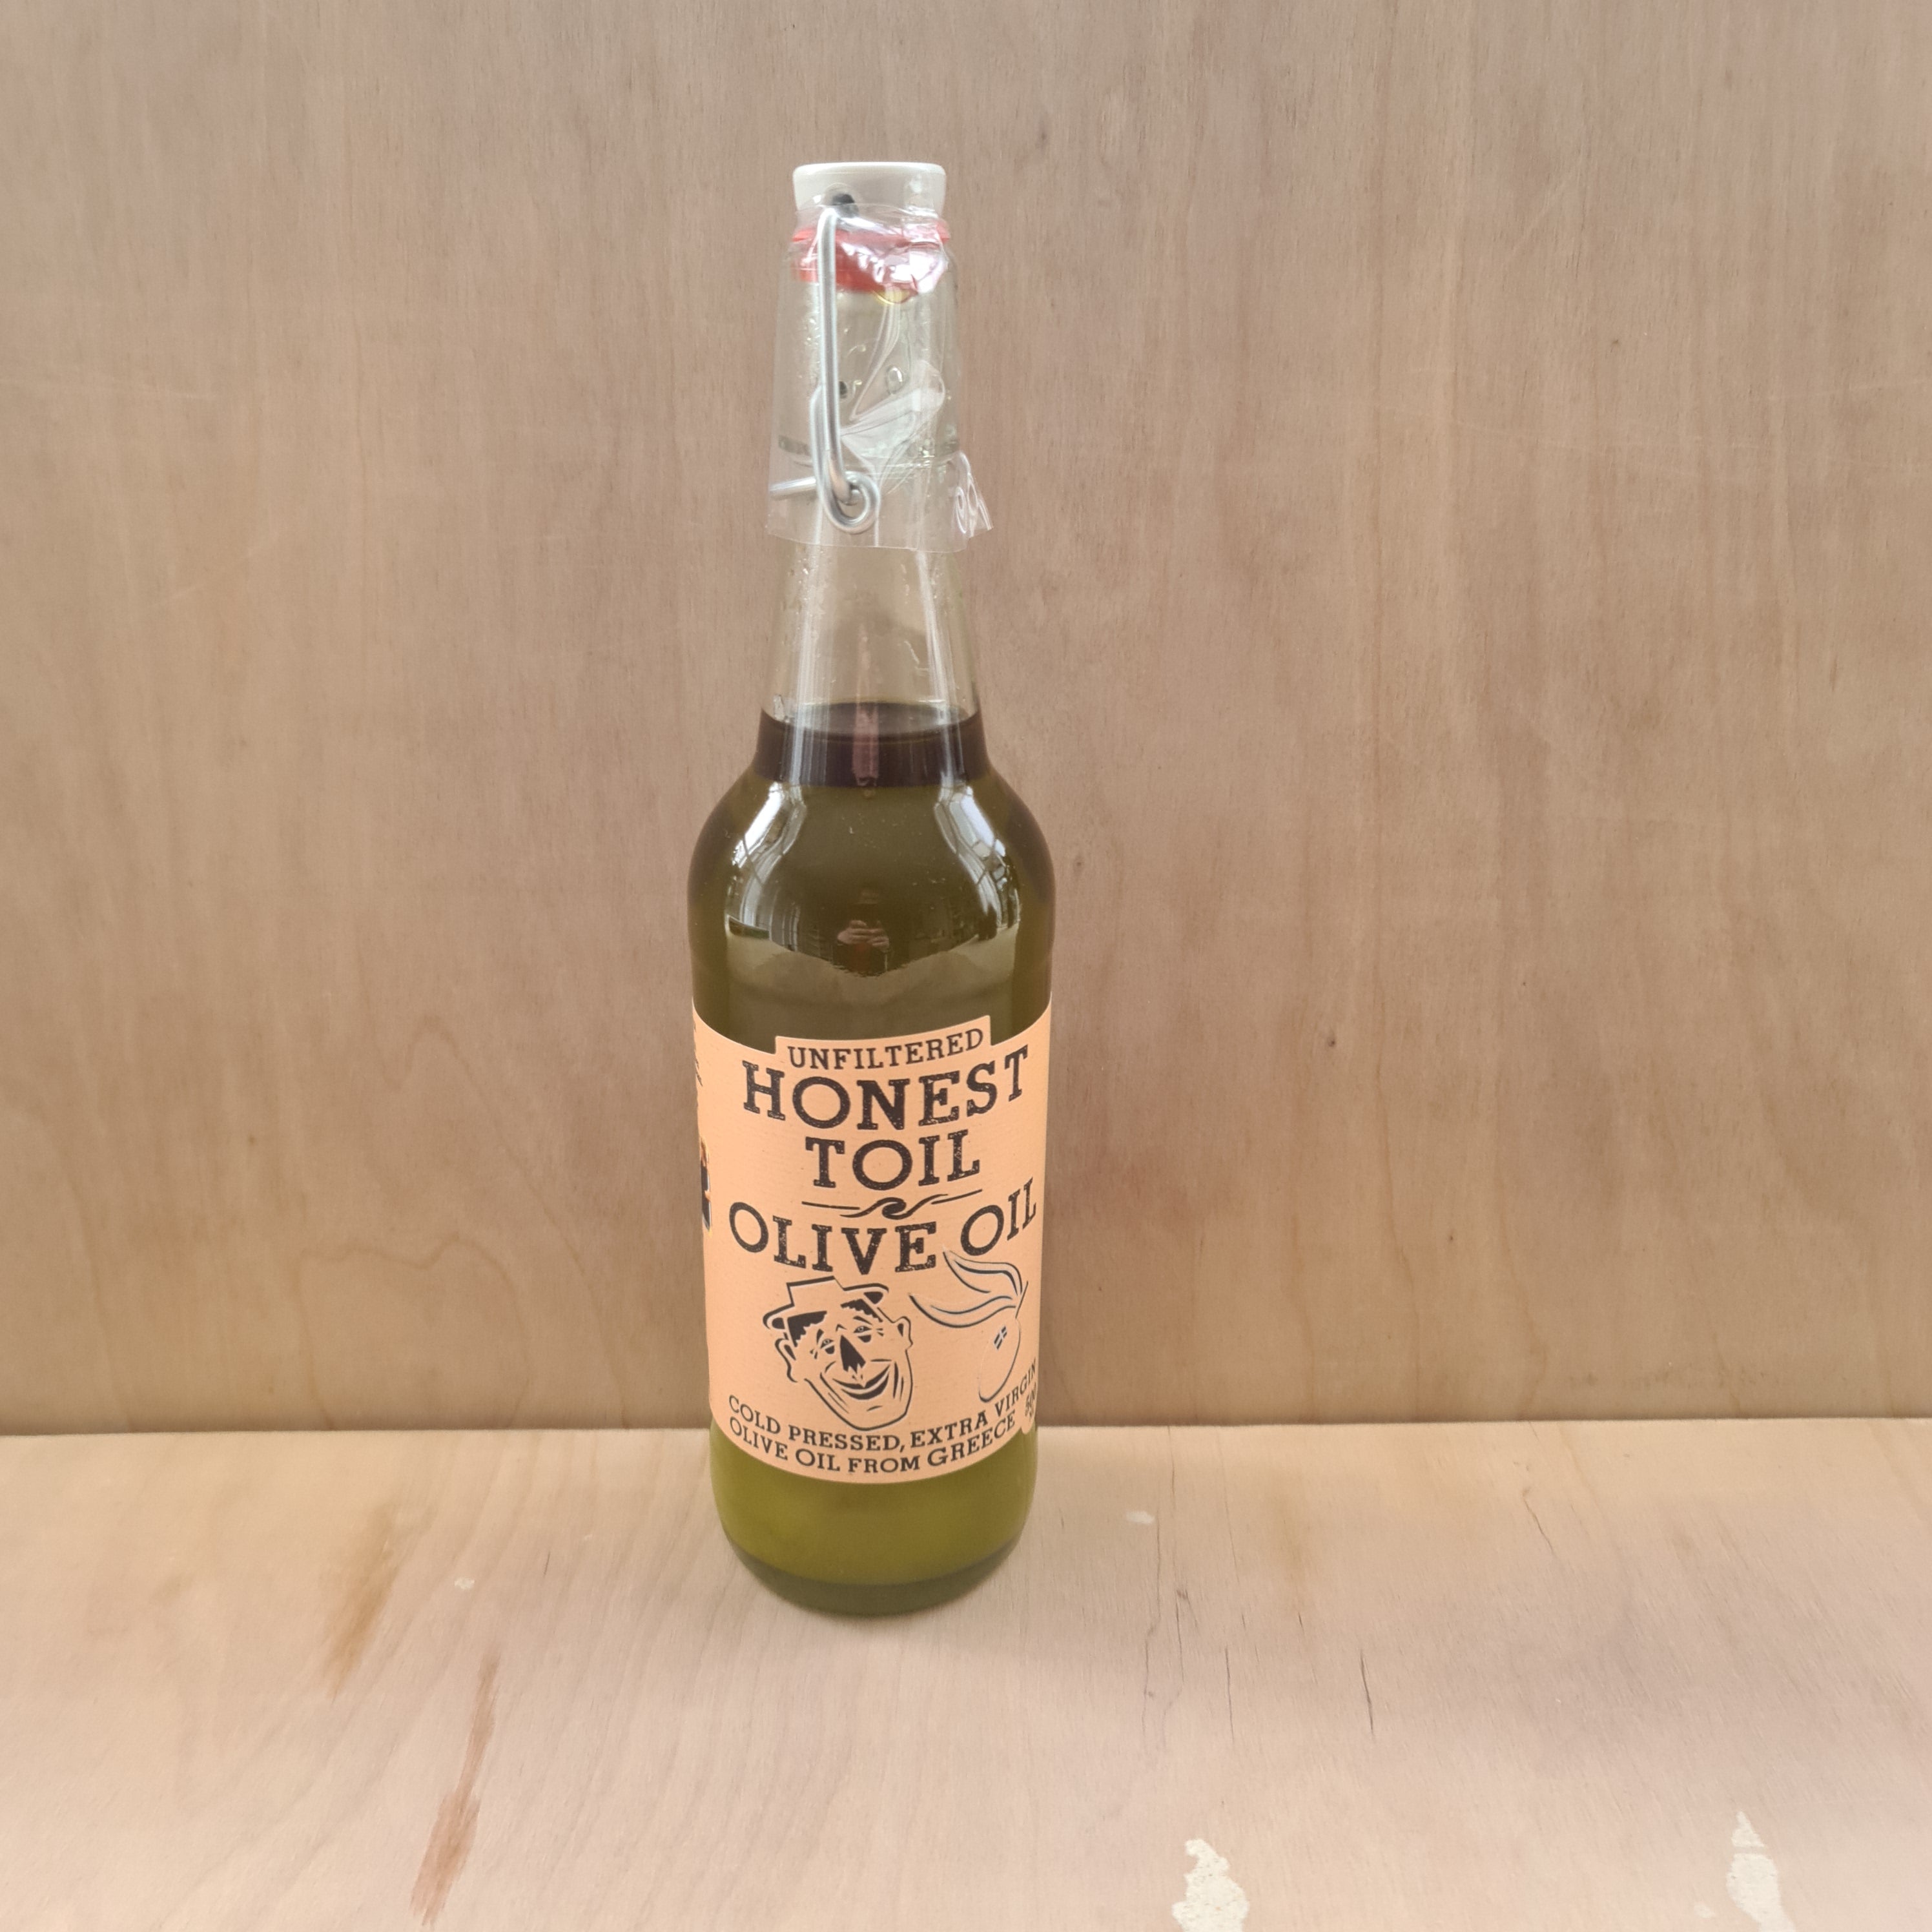 Honest Toil Olive Oil 500ml